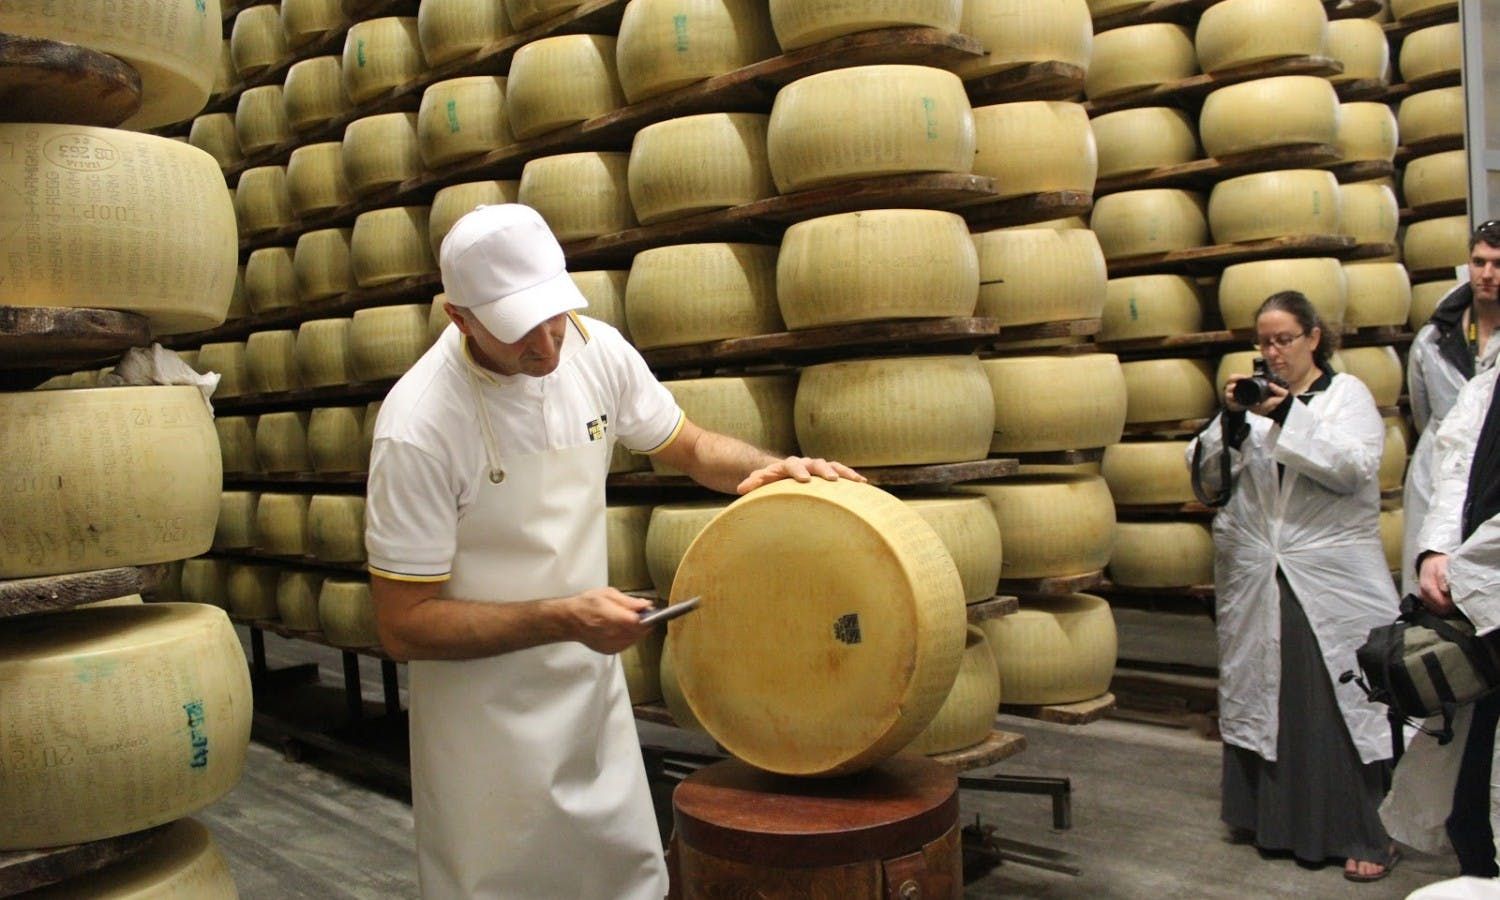 Imagen del tour: Excursión de degustación de queso Parmigiano Reggiano en Parma